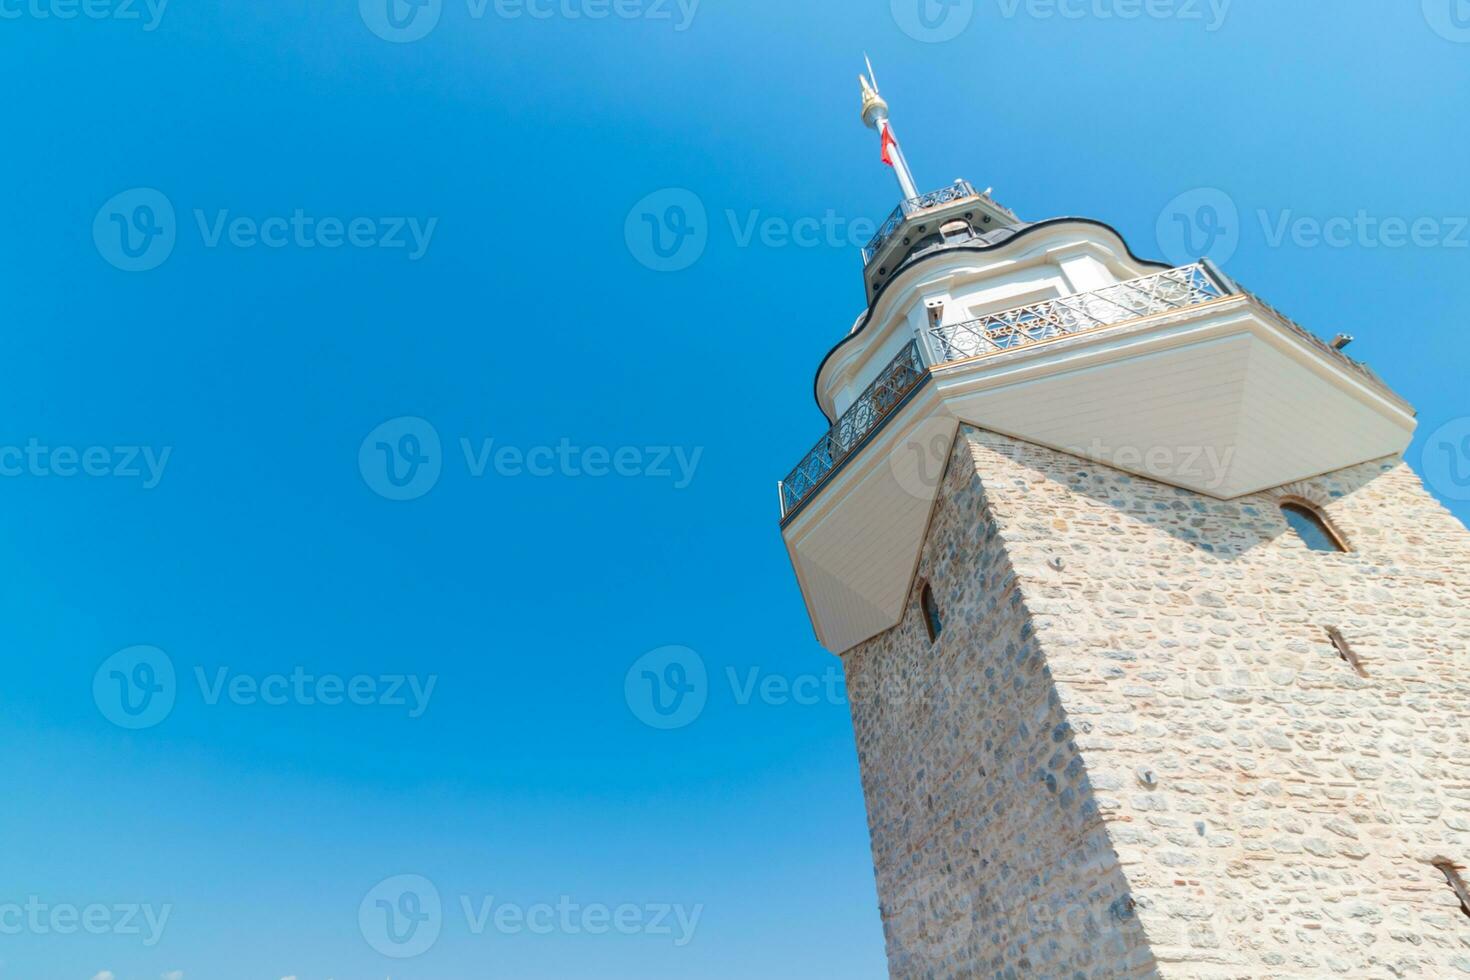 de torn av kiz kulesi eller jungfrus torn isolerat på blå himmel bakgrund foto